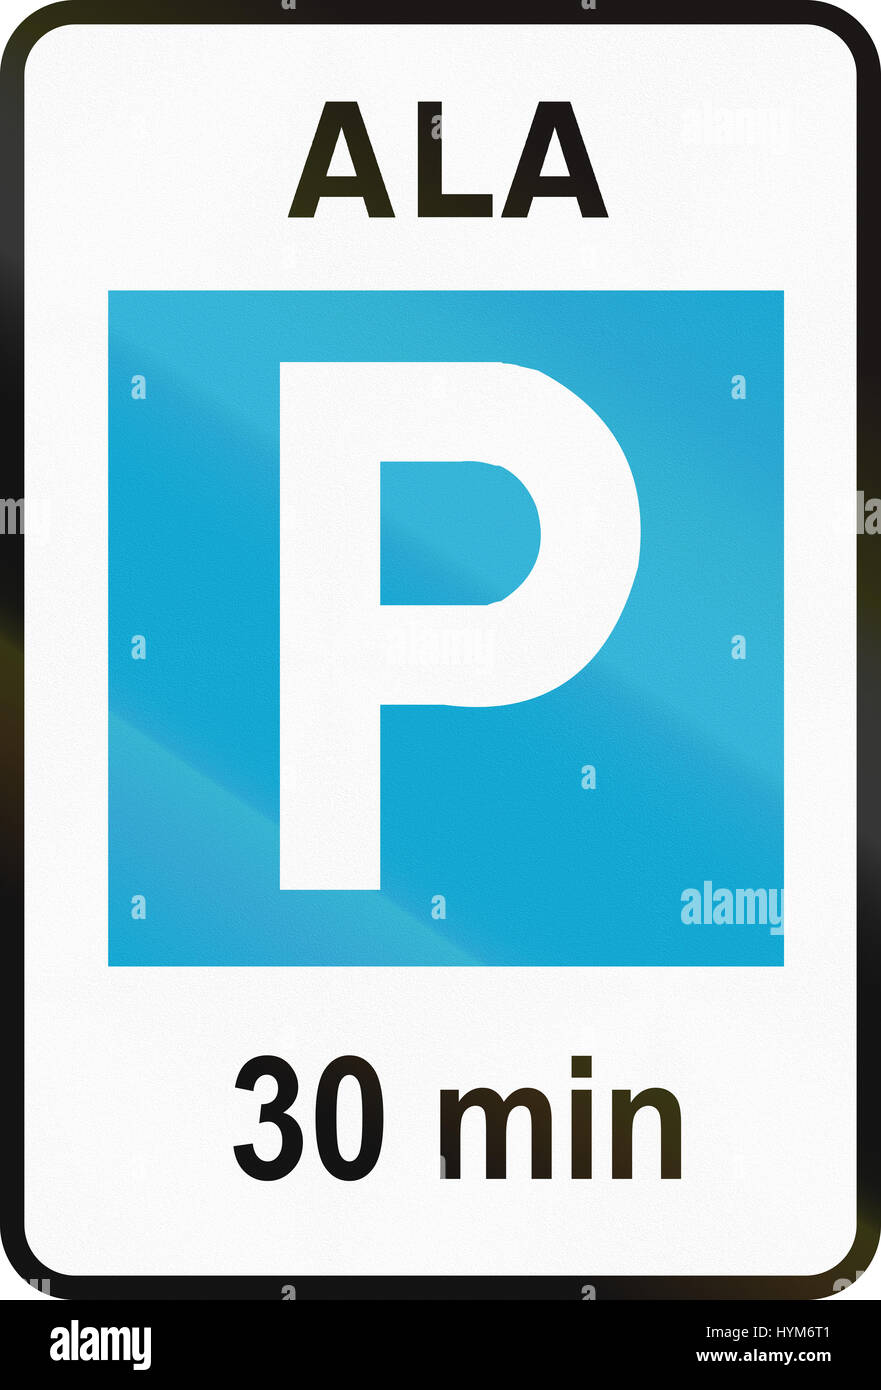 Señal de carretera utilizados en Estonia - 30 minutos de la zona de  aparcamiento. Significa ala zona Fotografía de stock - Alamy